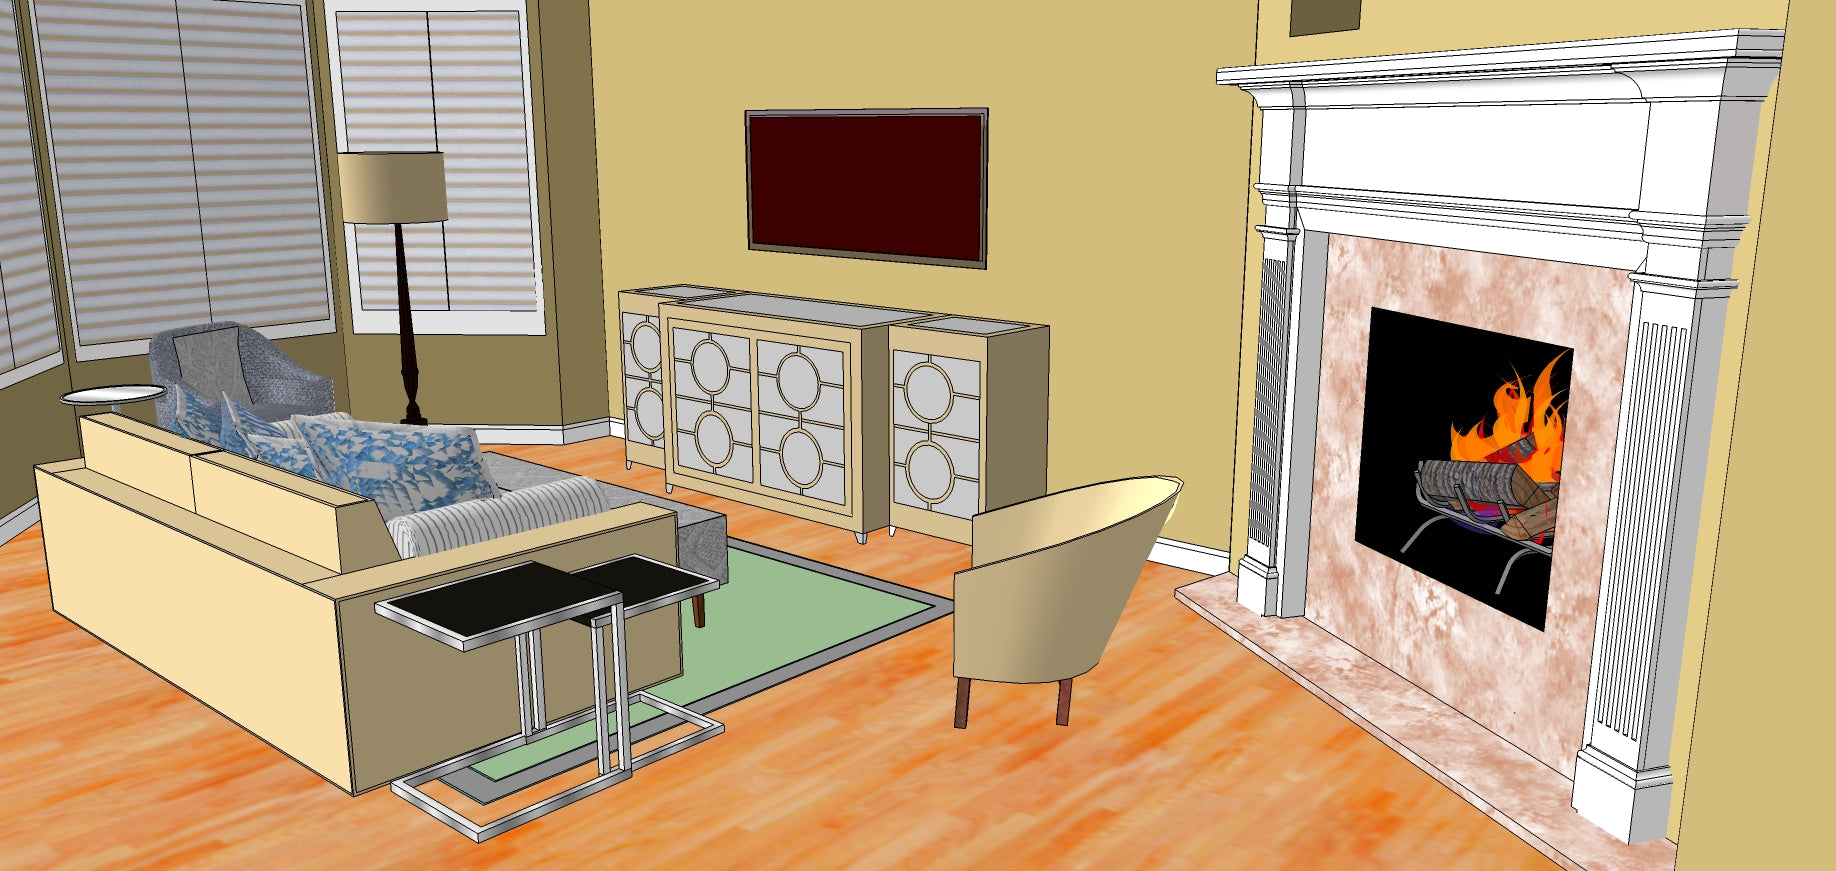 Marina Livingroom Remodel - Grats Decor Interior Design & Build Inc.